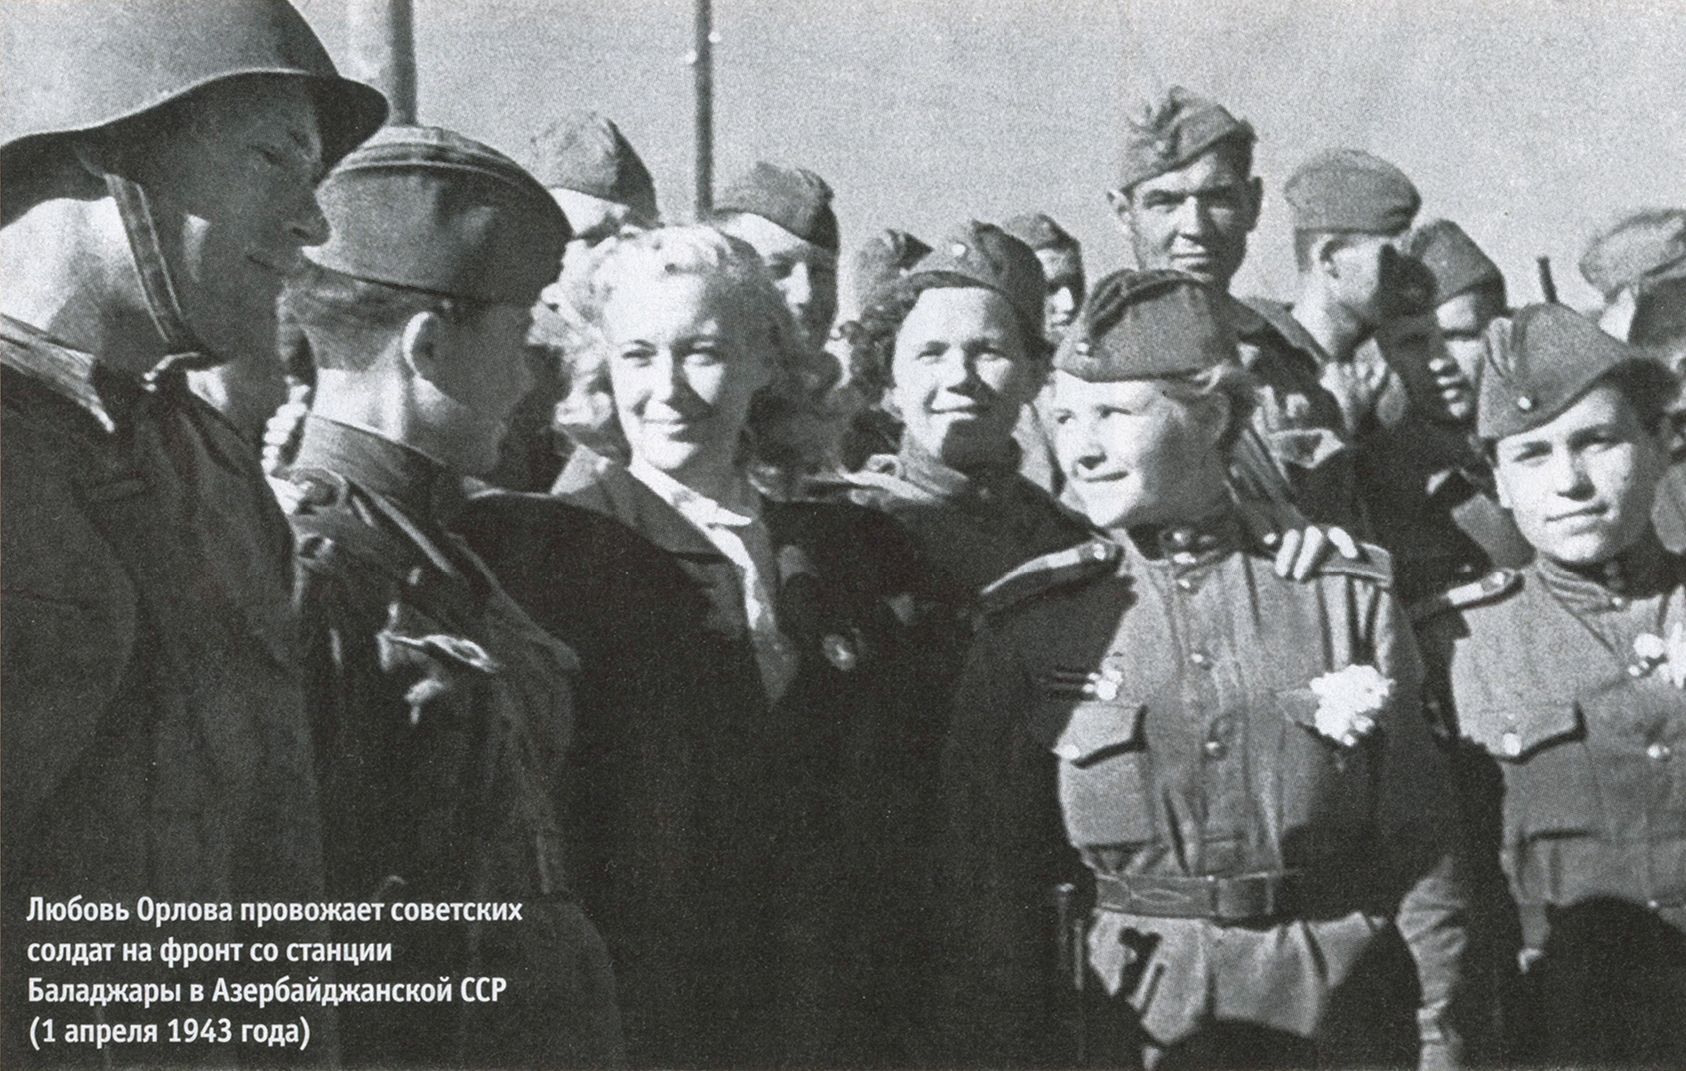 Любовь Орлова провожает советских солдат на фронт со станции Баладжары в Азербайджанской ССР (1 апреля 1943 года)